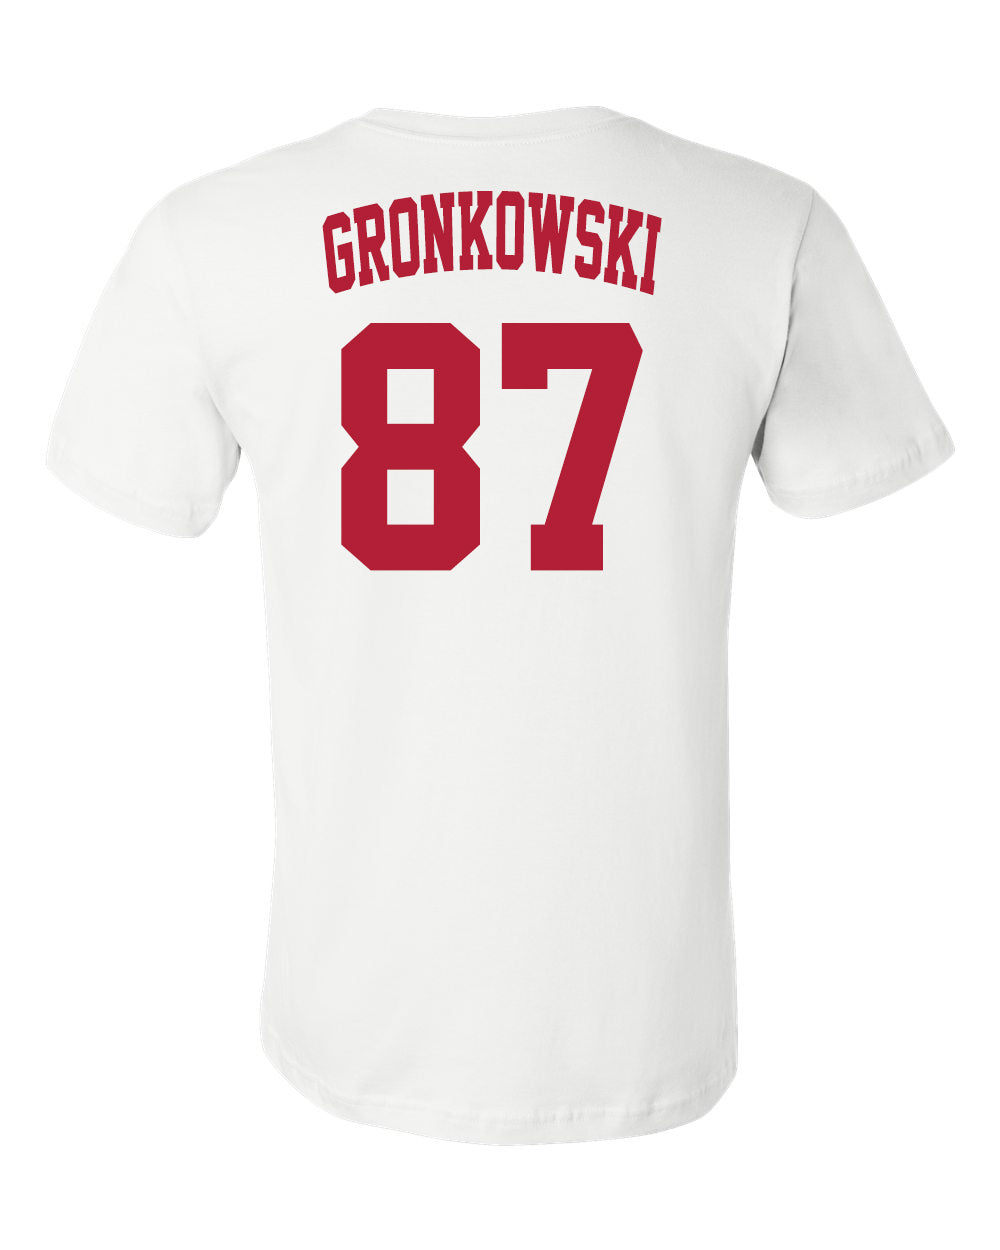 gronkowski jersey white